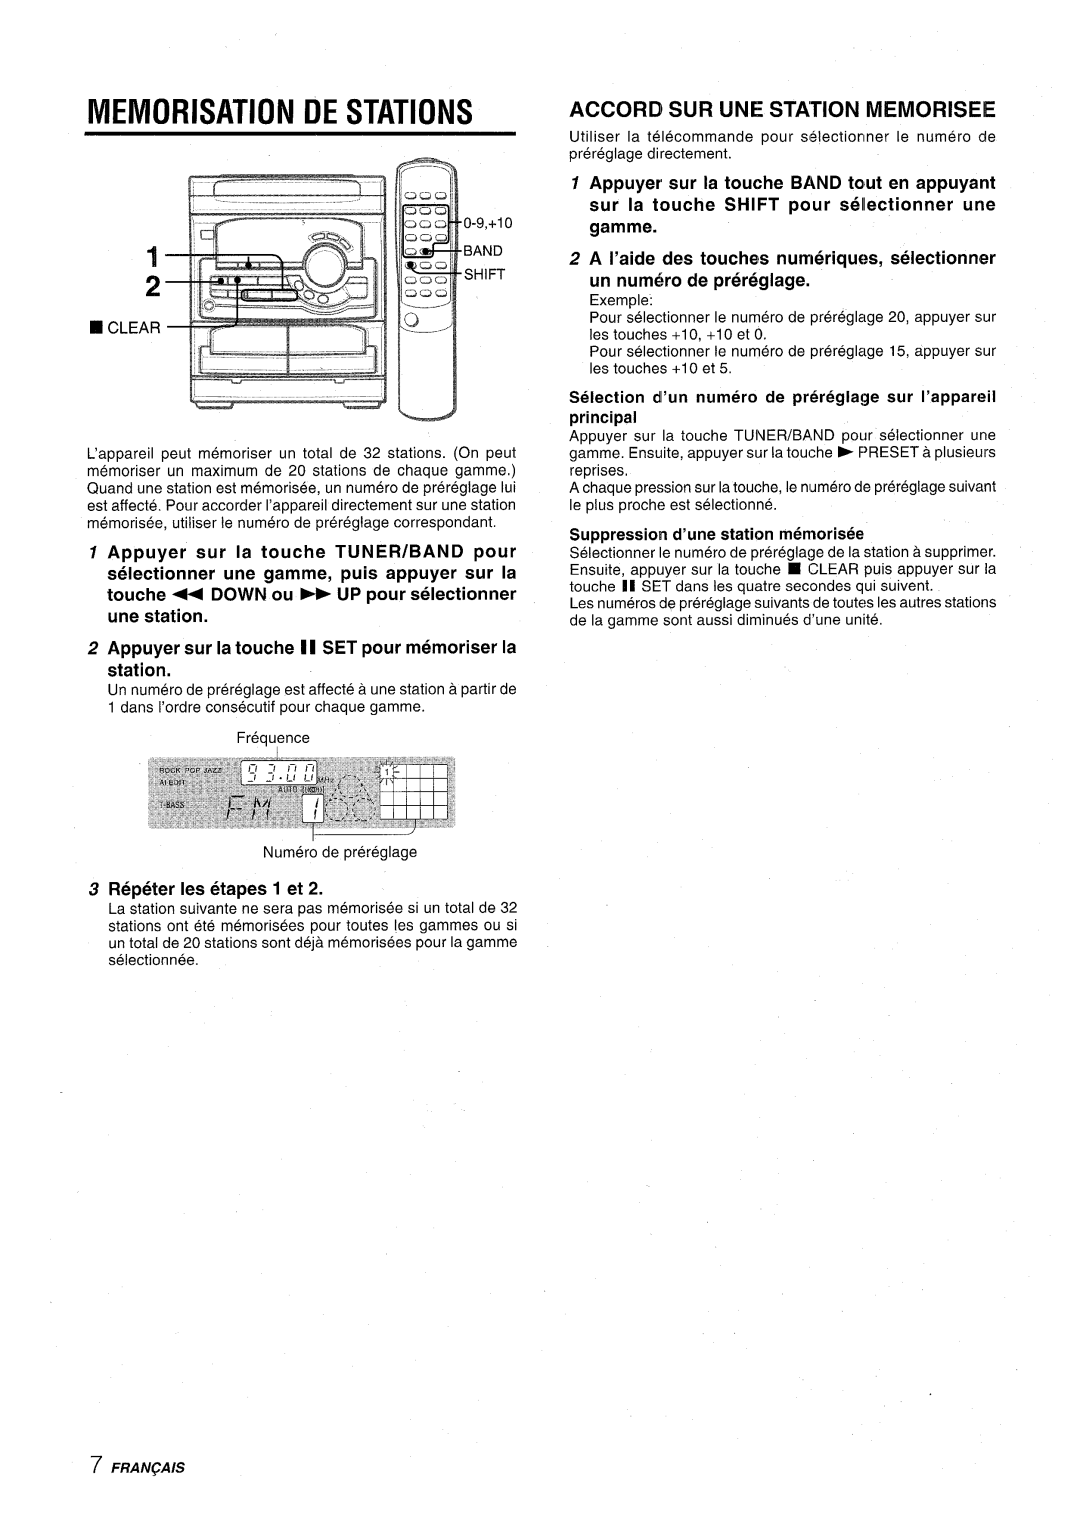 Aiwa CX-NA22 manual Memorisation De Stations, Accord Sur Une Station Memoriseie, Repeter Ies etapes 1 et 